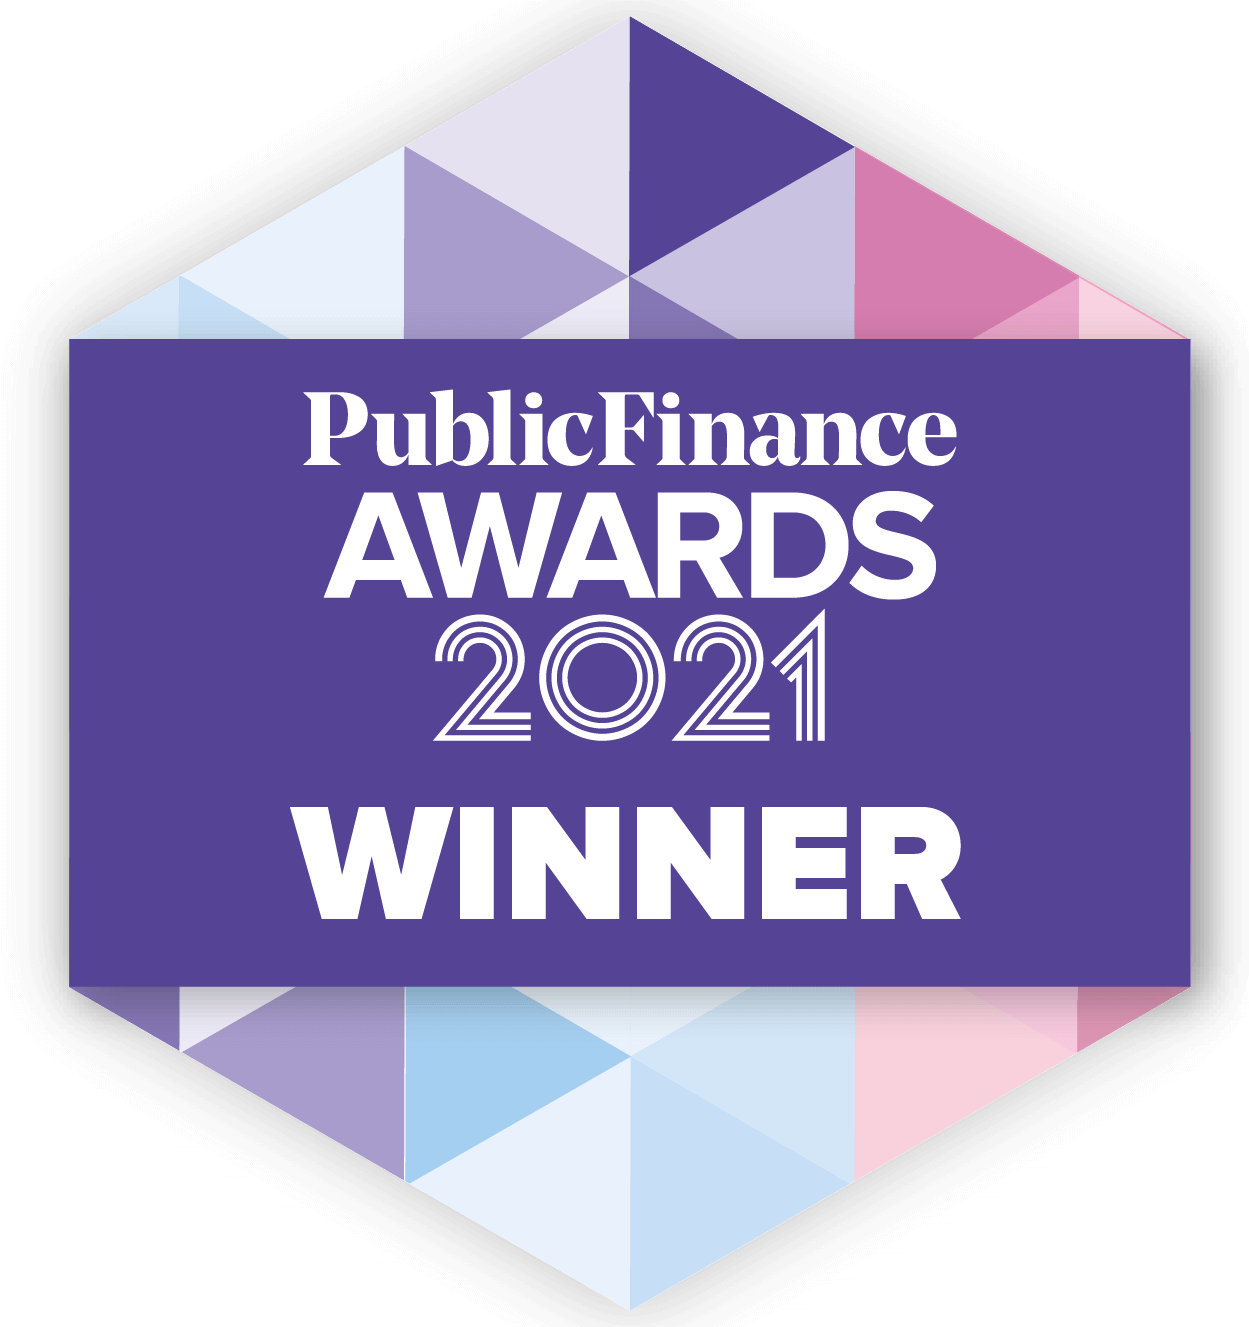 Public Finance Awards 2021 Winner